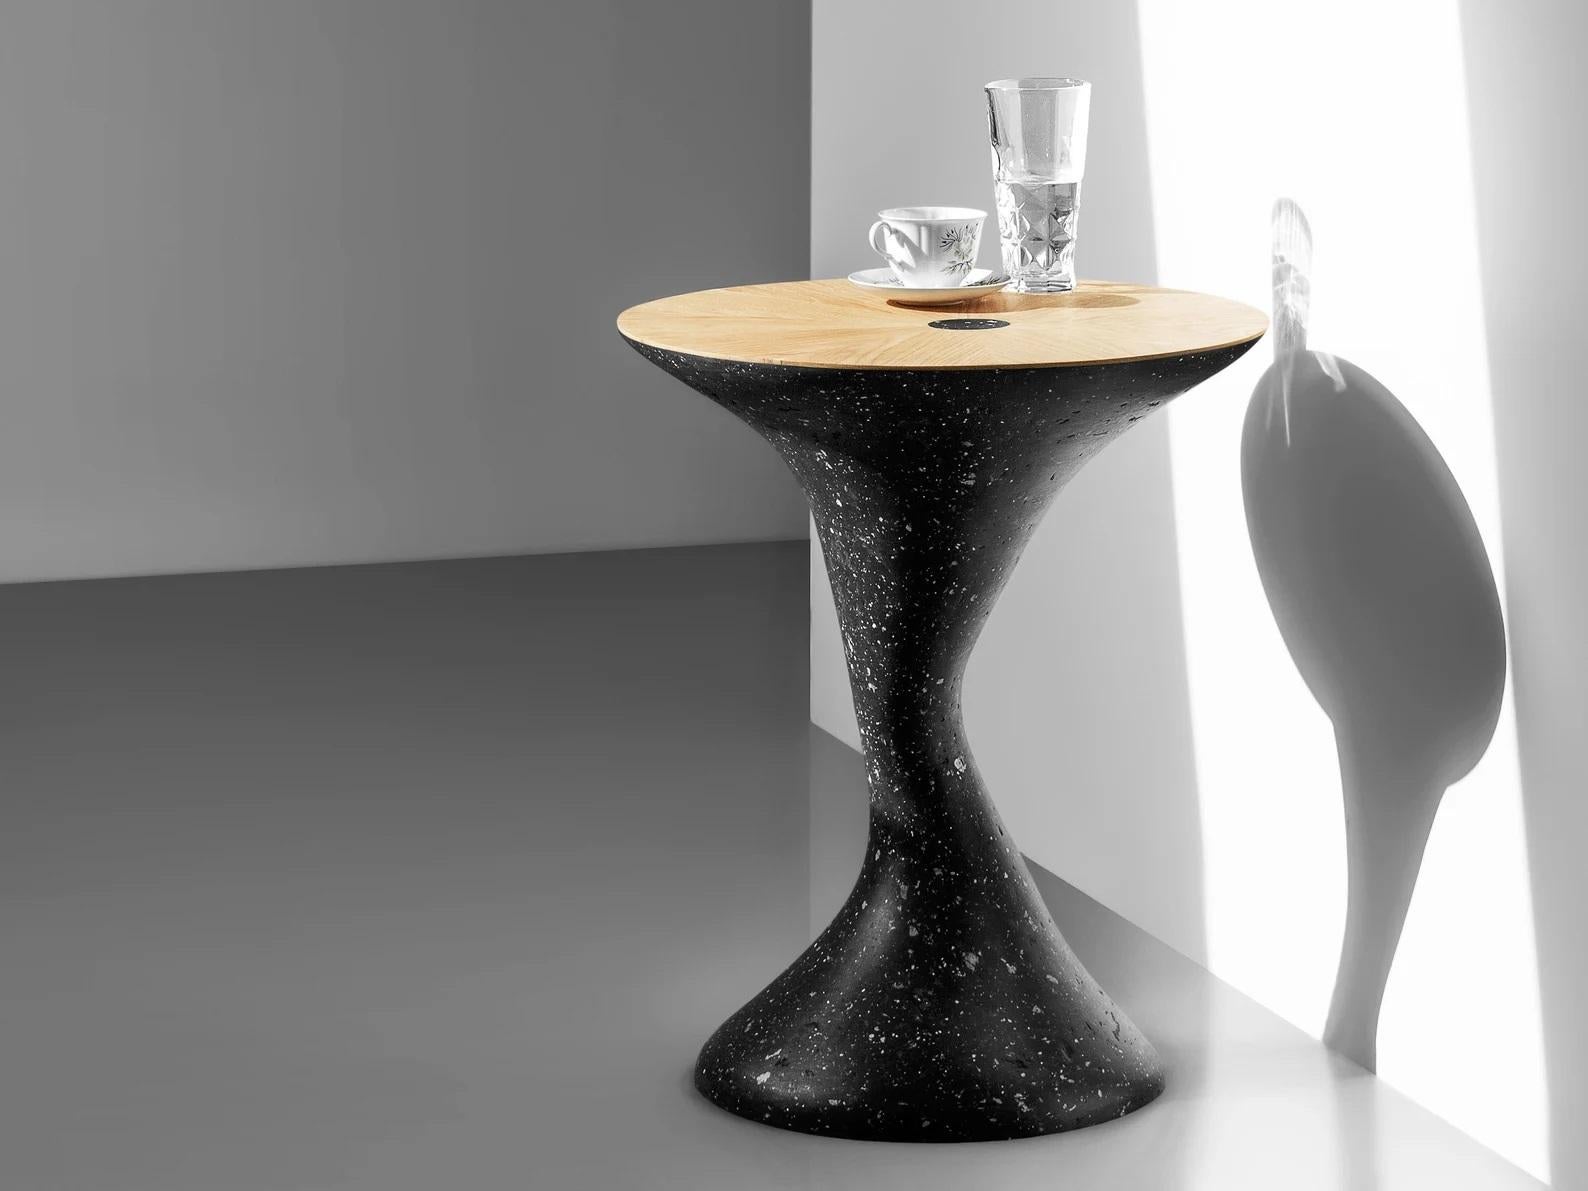 Table d'appoint sculpturale par Kasanai
Dimensions : D 45 x H 54 cm.
MATERIAL : Chêne, ciment, papier recyclé, colle, peinture.
6 kg.

L'inspiration visuelle de la table d'appoint est une combinaison de bois naturel et de béton. Ces deux matériaux